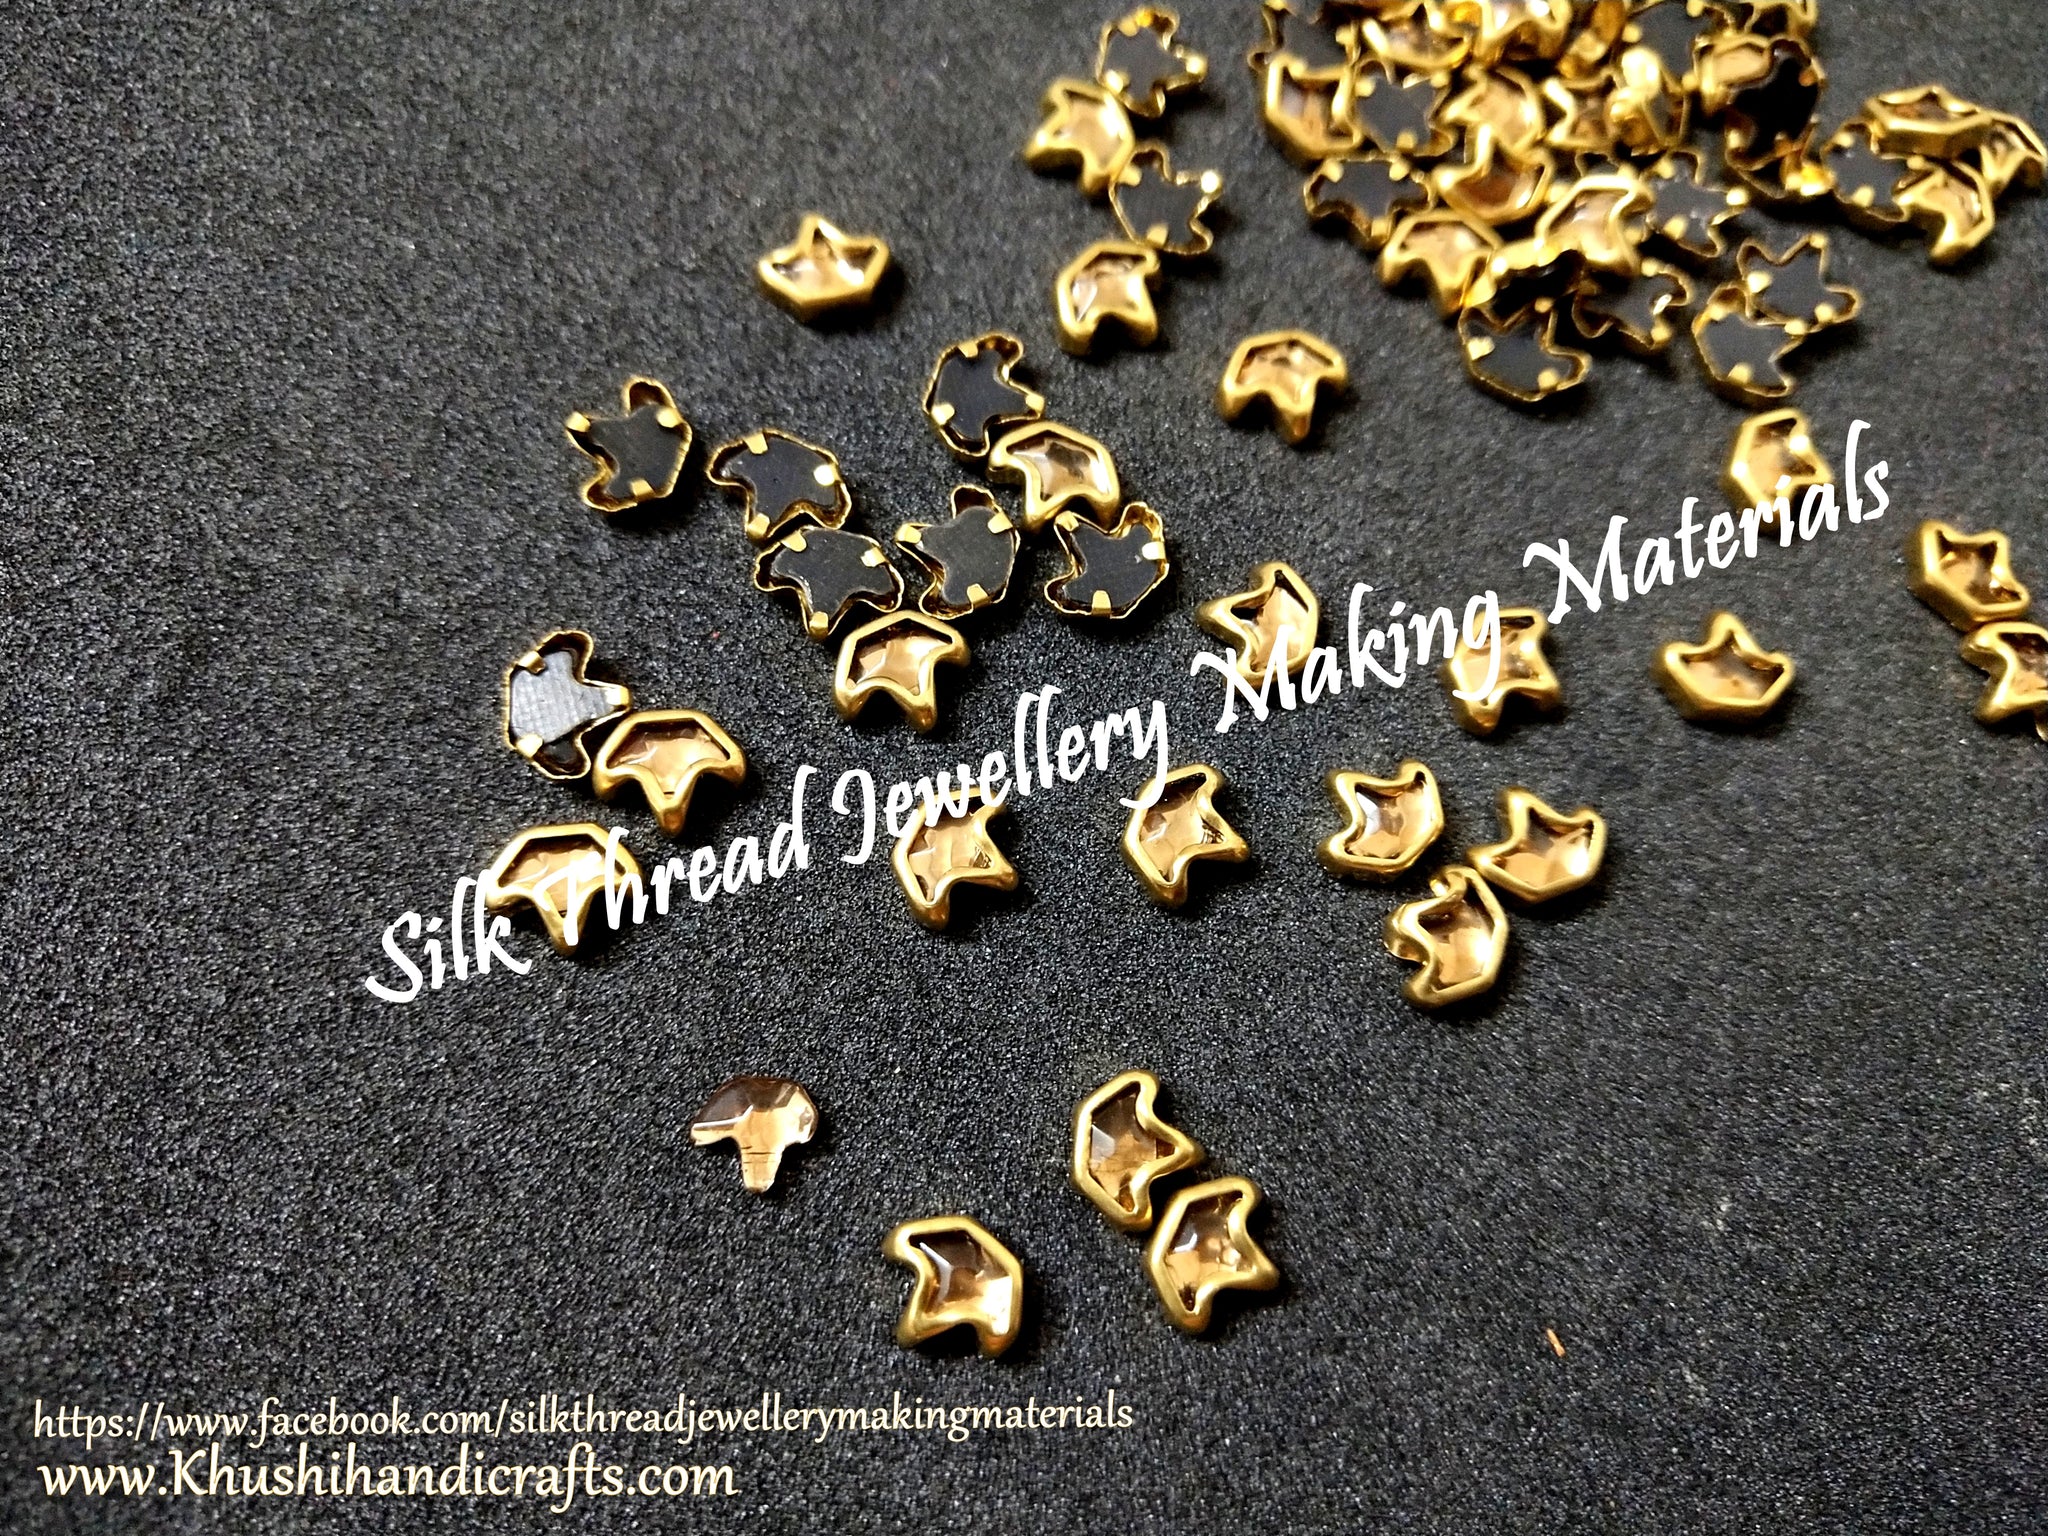 Kundan stones /Kundans - Designer Pattern 4 Gold shade. Pack of 10 grams